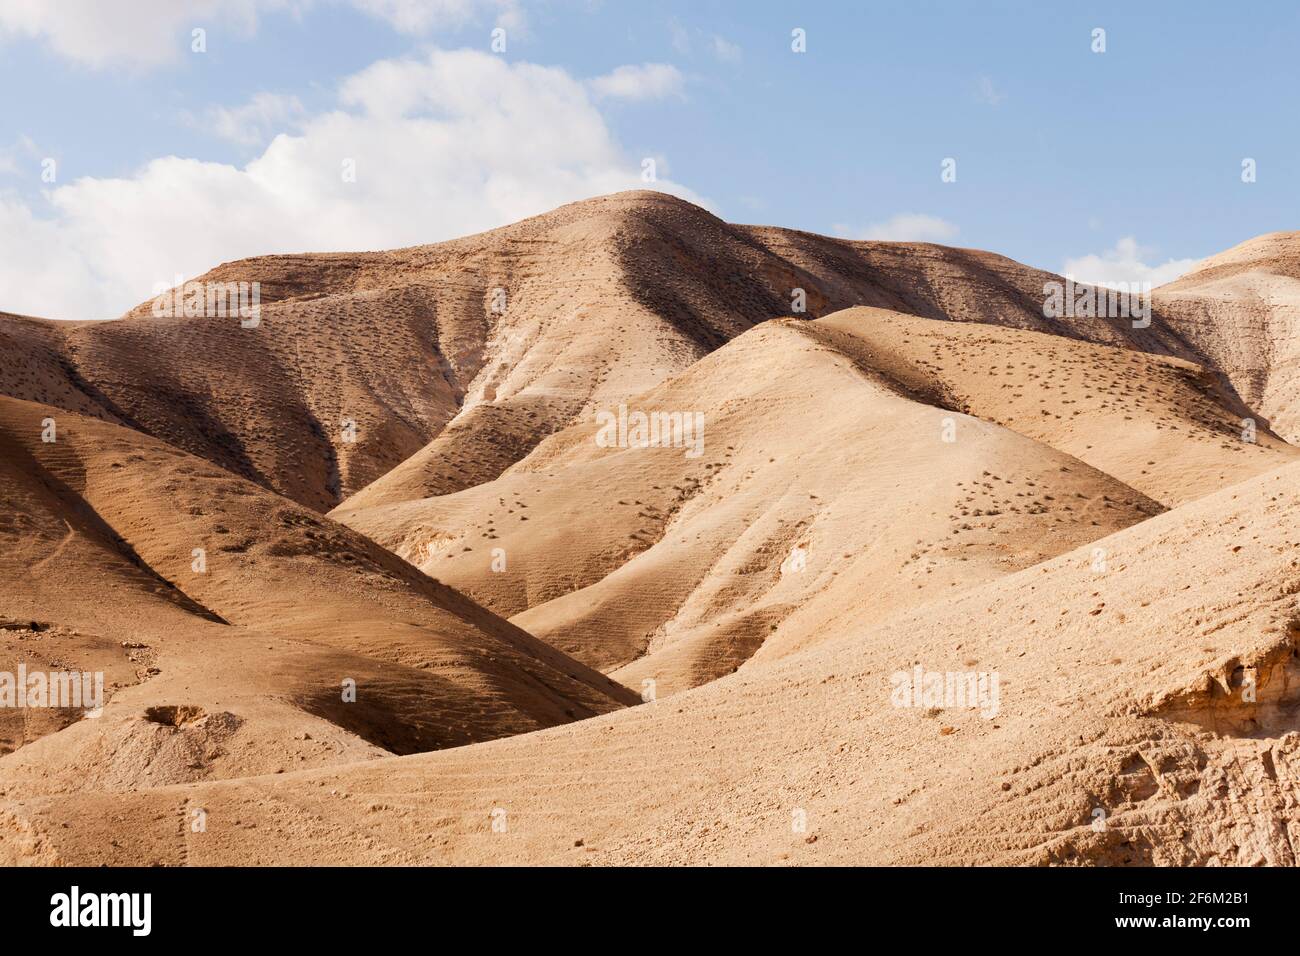 Israel, Negev desert, arid desert landscape Stock Photo